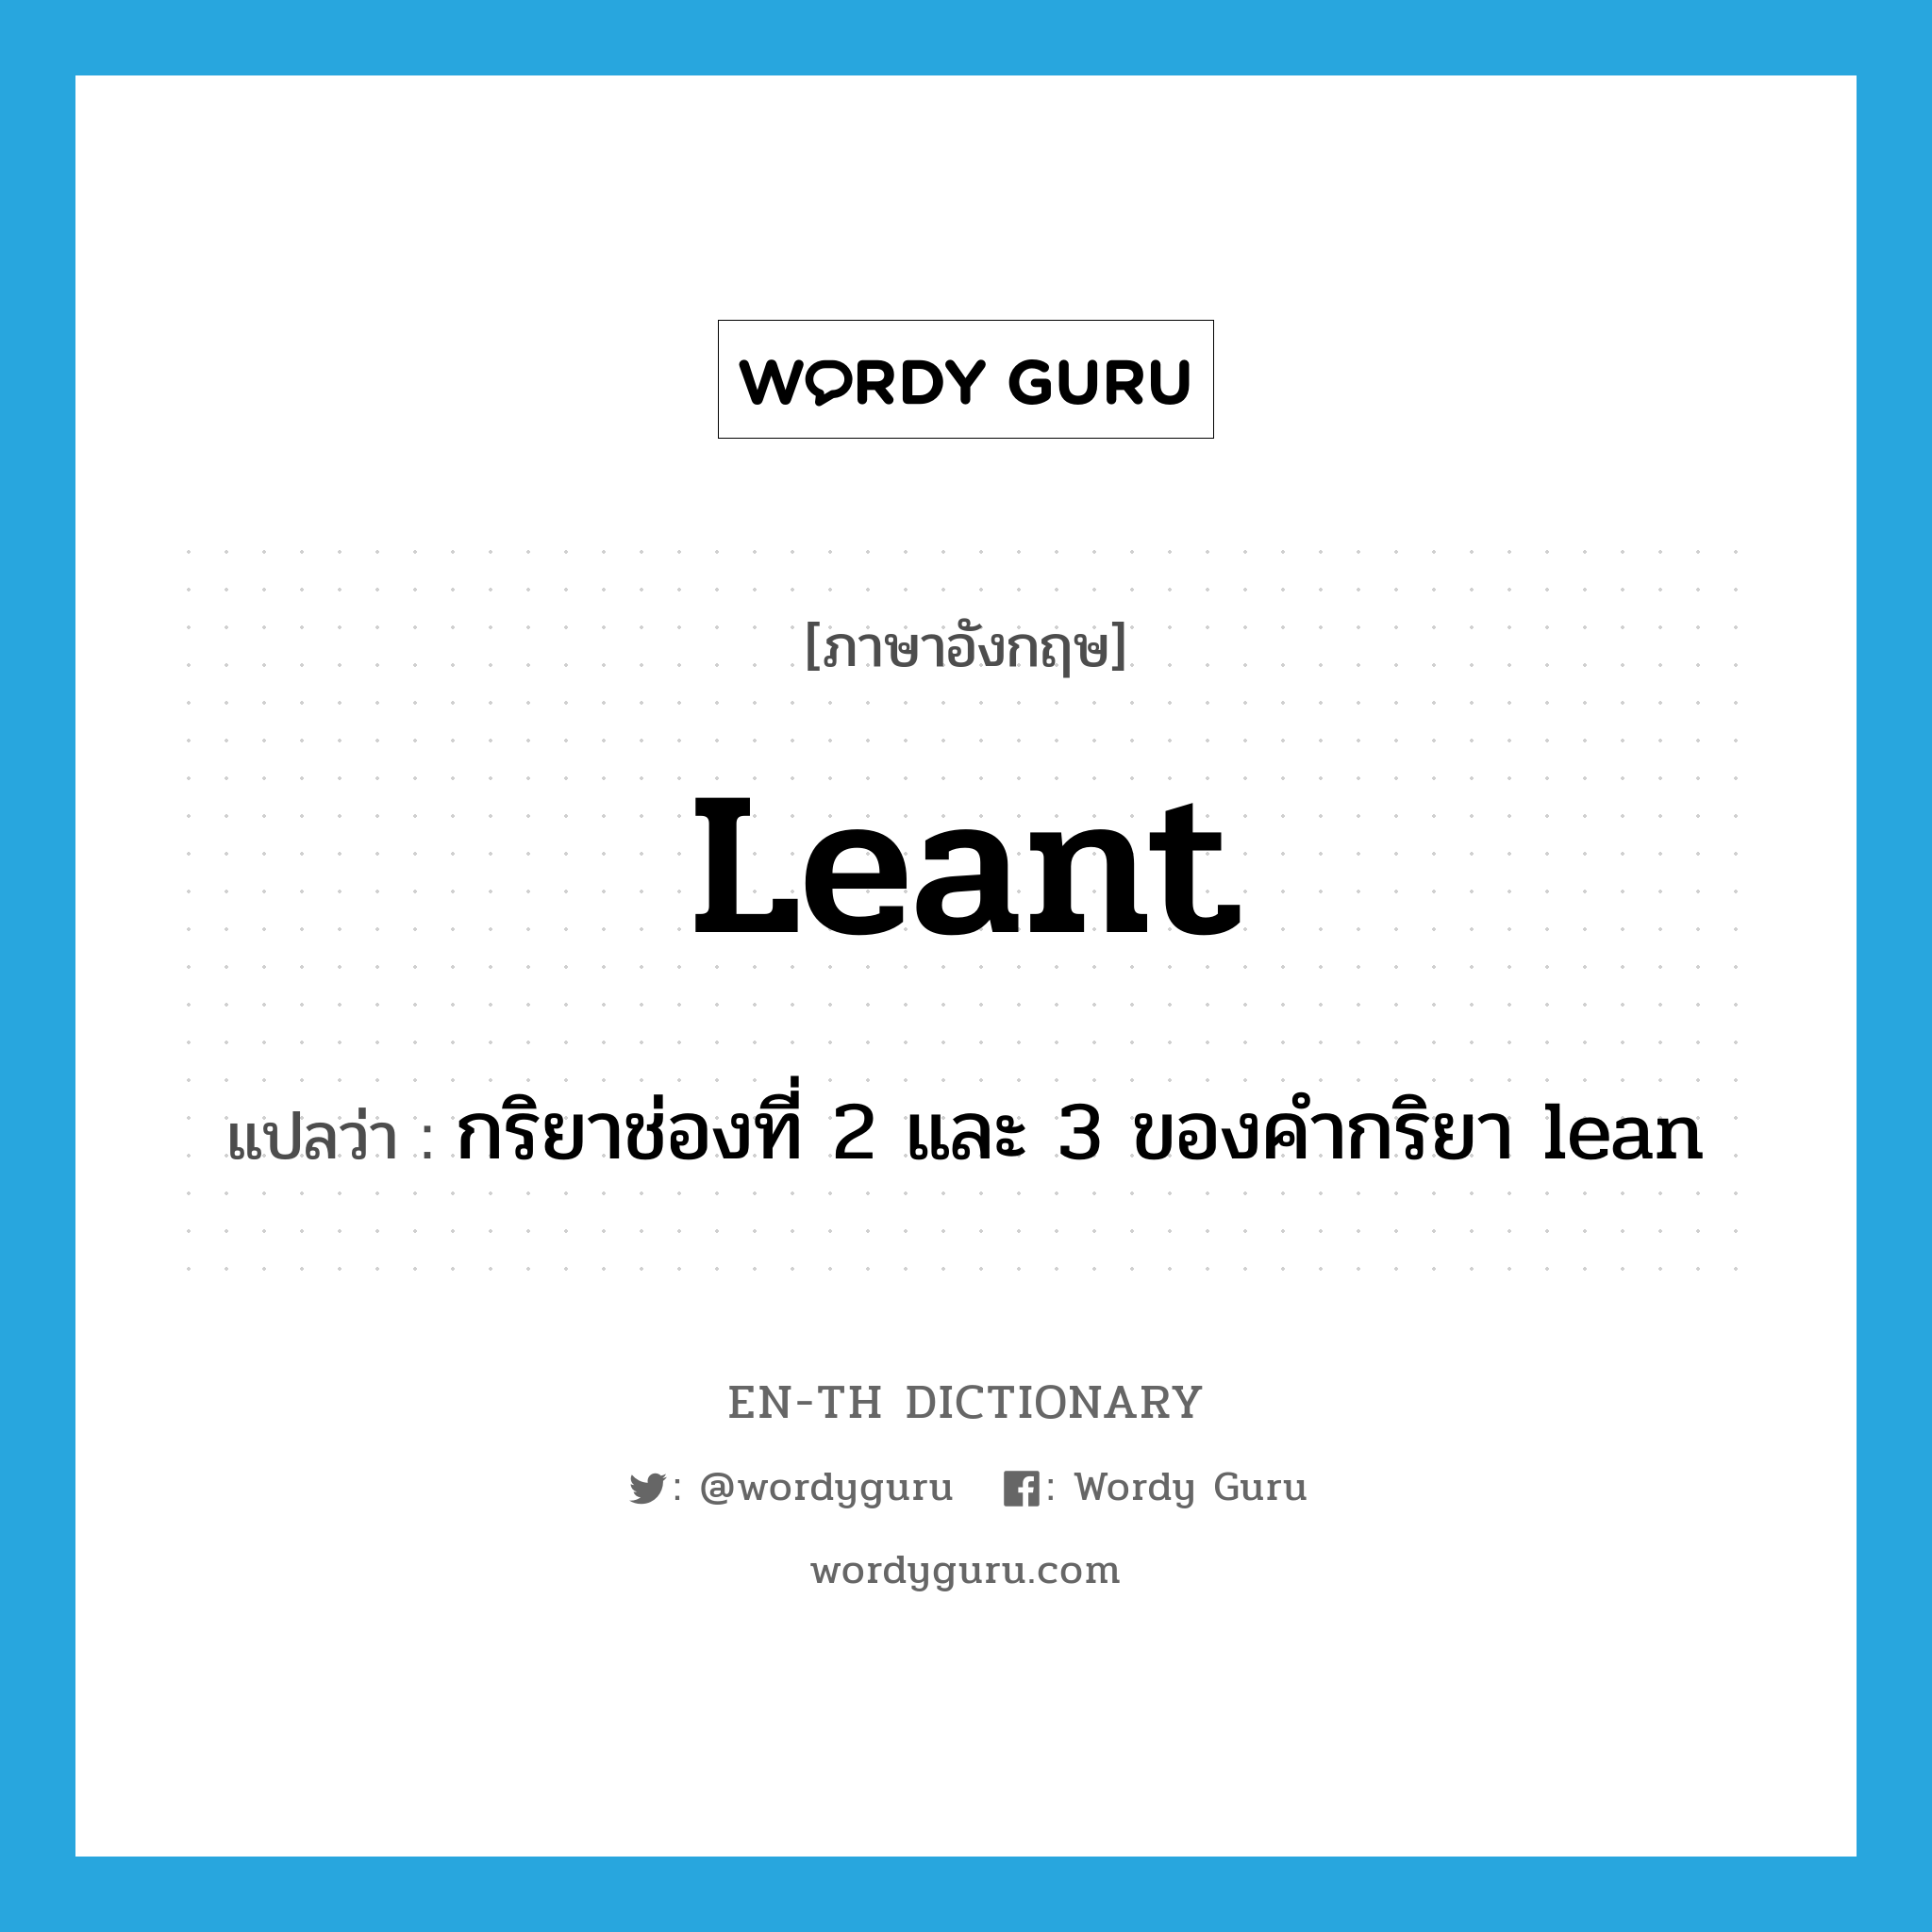 กริยาช่องที่ 2 และ 3 ของคำกริยา lean ภาษาอังกฤษ?, คำศัพท์ภาษาอังกฤษ กริยาช่องที่ 2 และ 3 ของคำกริยา lean แปลว่า leant ประเภท VT หมวด VT